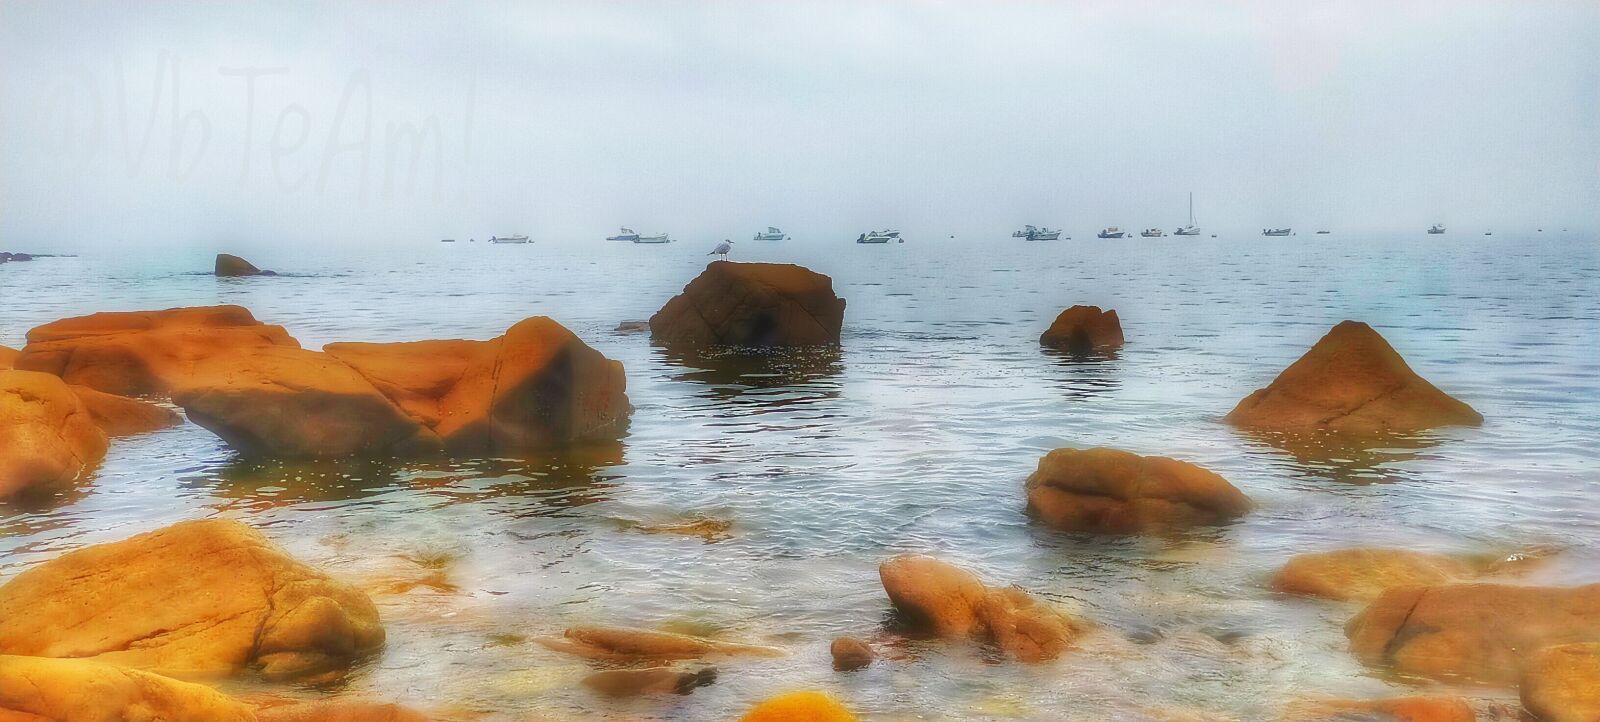 OPPO A9 2020 sample photo. Mist, sea, beach photography